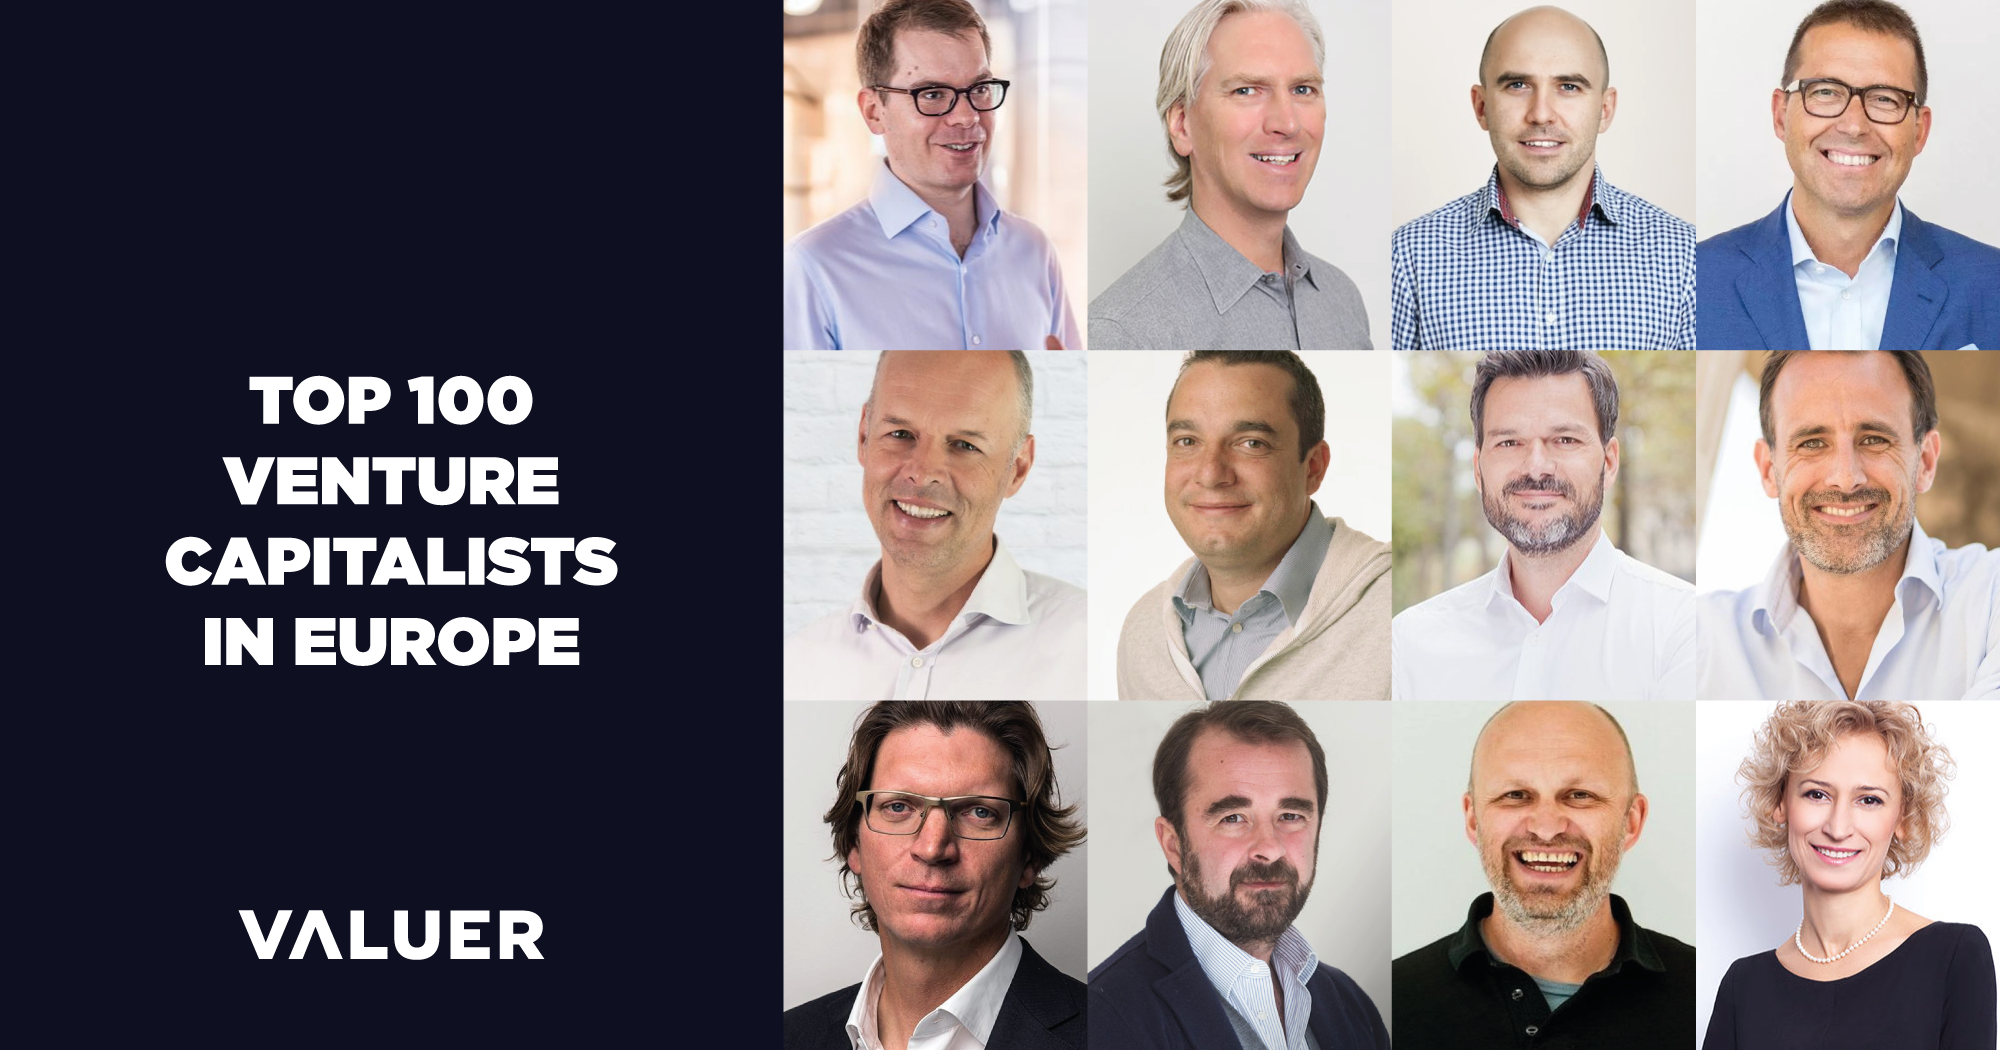 Top 100 Venture Capitalists in Europe